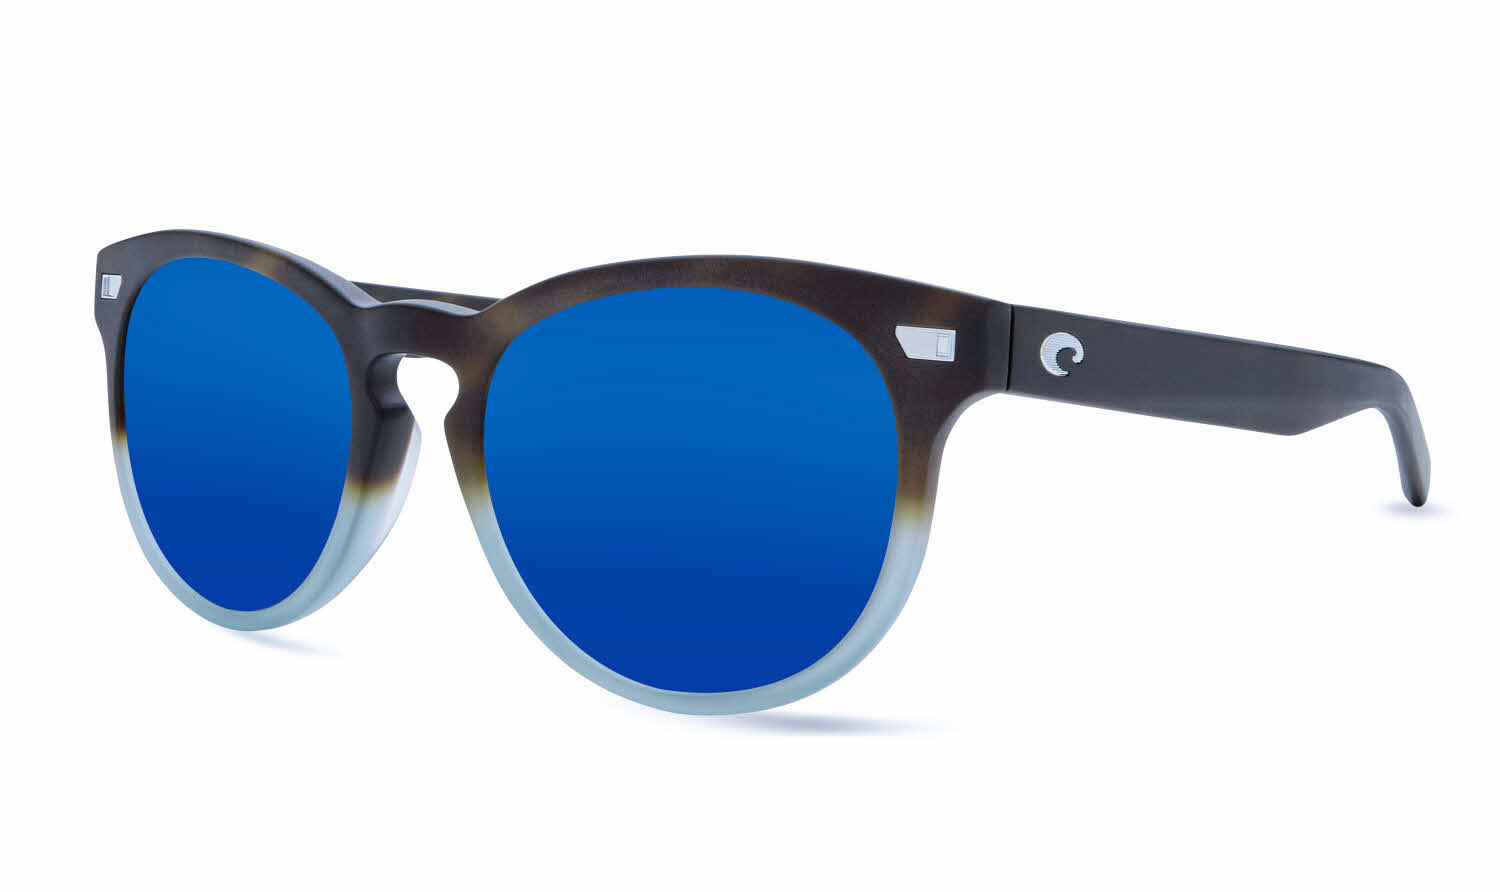 Costa Del Mar - Del Mar Collection Prescription Sunglasses